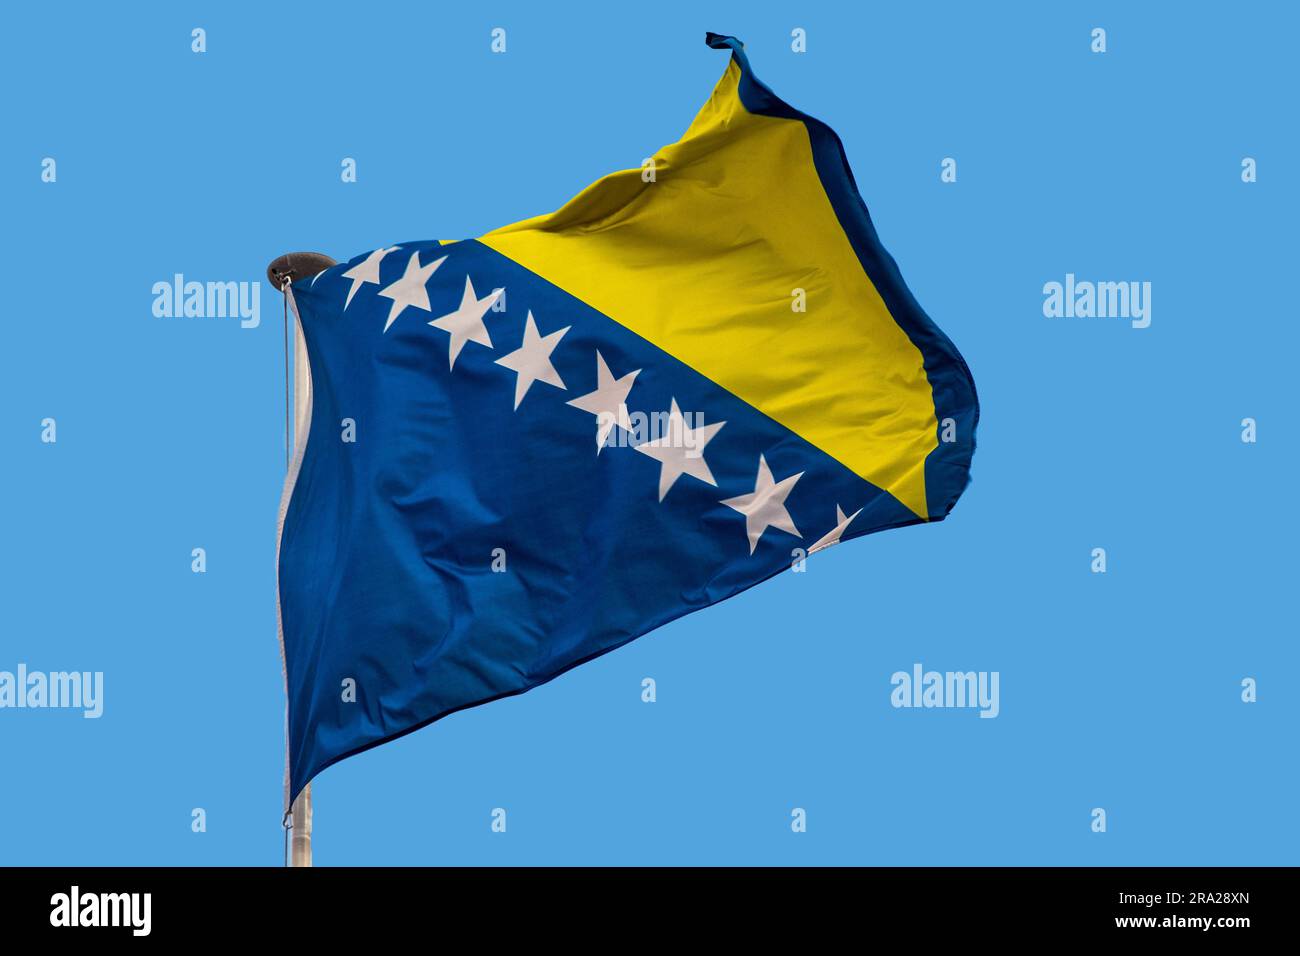 Flagge von Bosnien und Herzegowina winken im Wind, isolierten weißen  Hintergrund. Bosnische Flagge Stockfotografie - Alamy